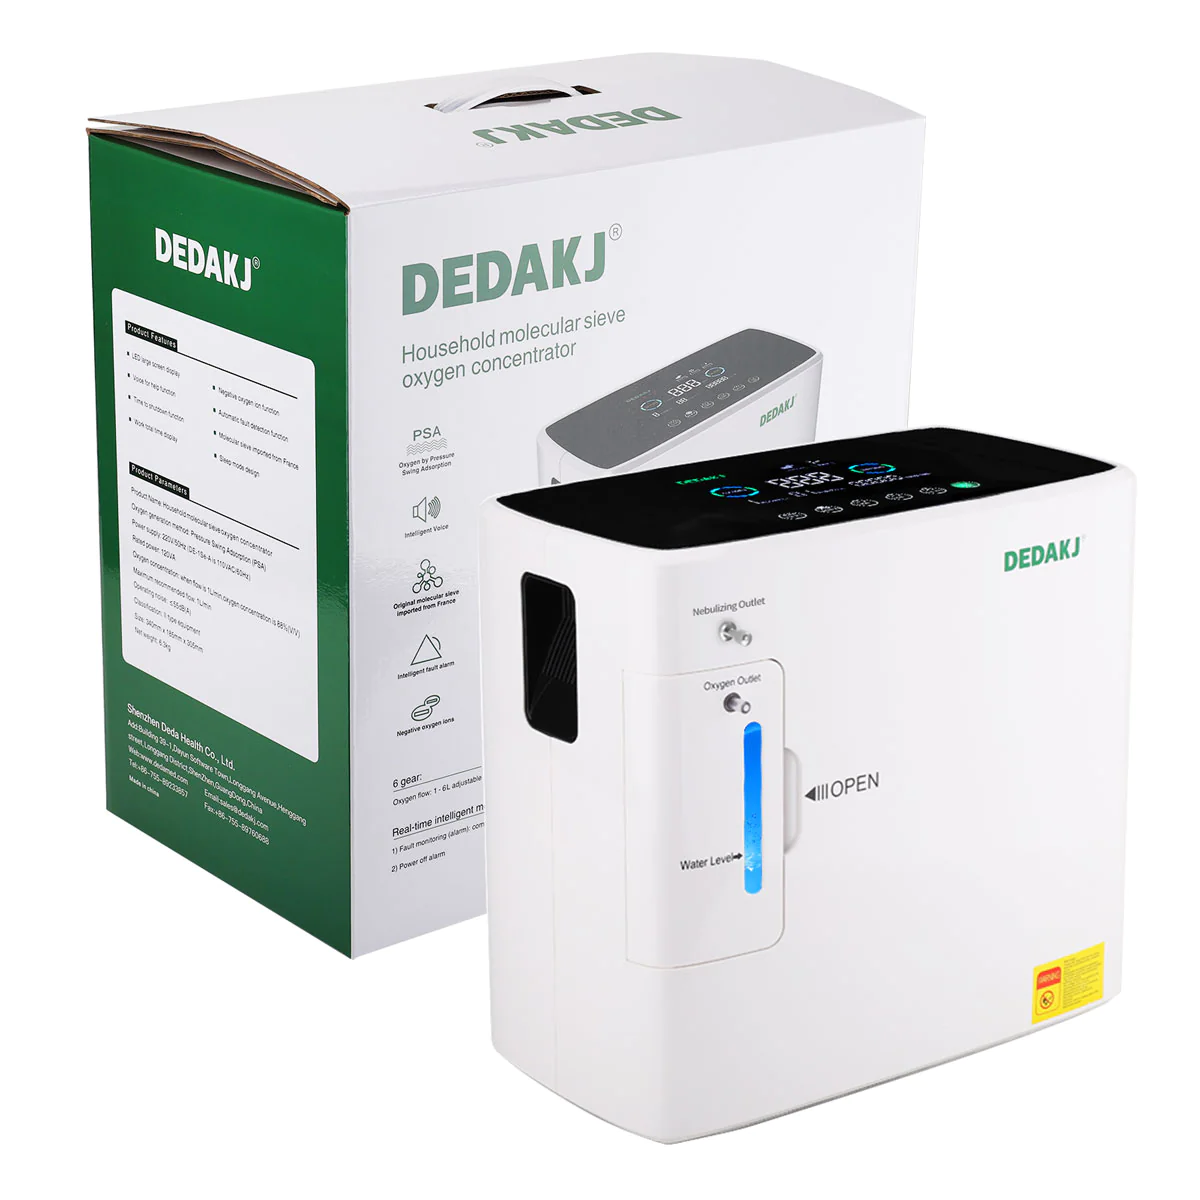 dedakj de-2sw oxygen concentrator with nebulizer